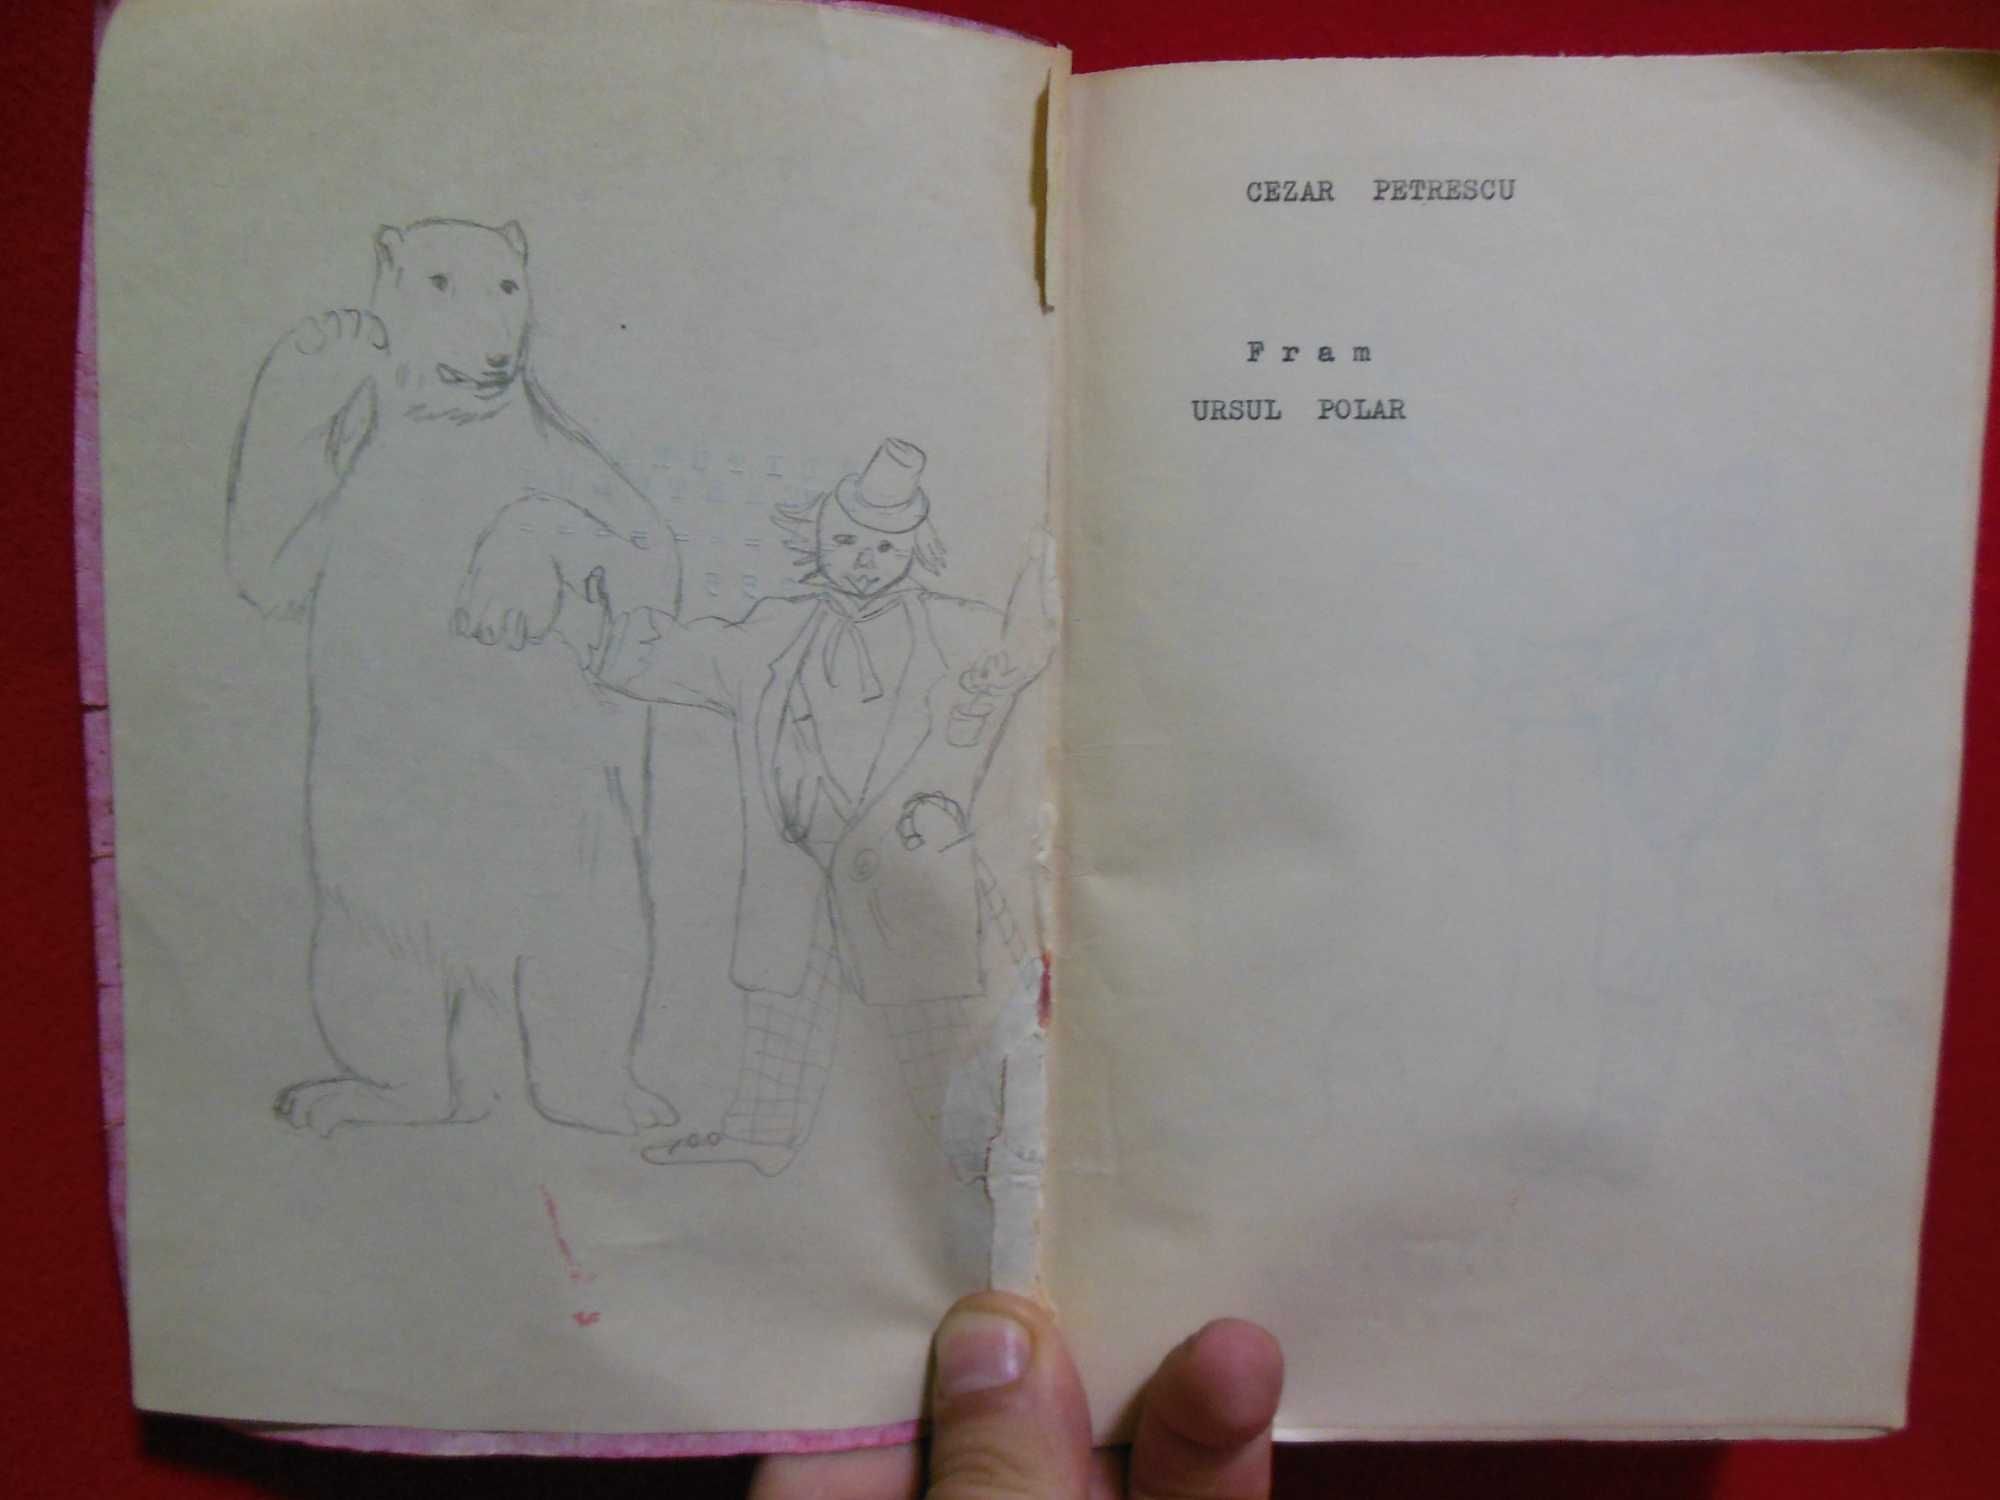 manuscris dactilografiat vechi Fram ursul polar de Cezar Petrescu